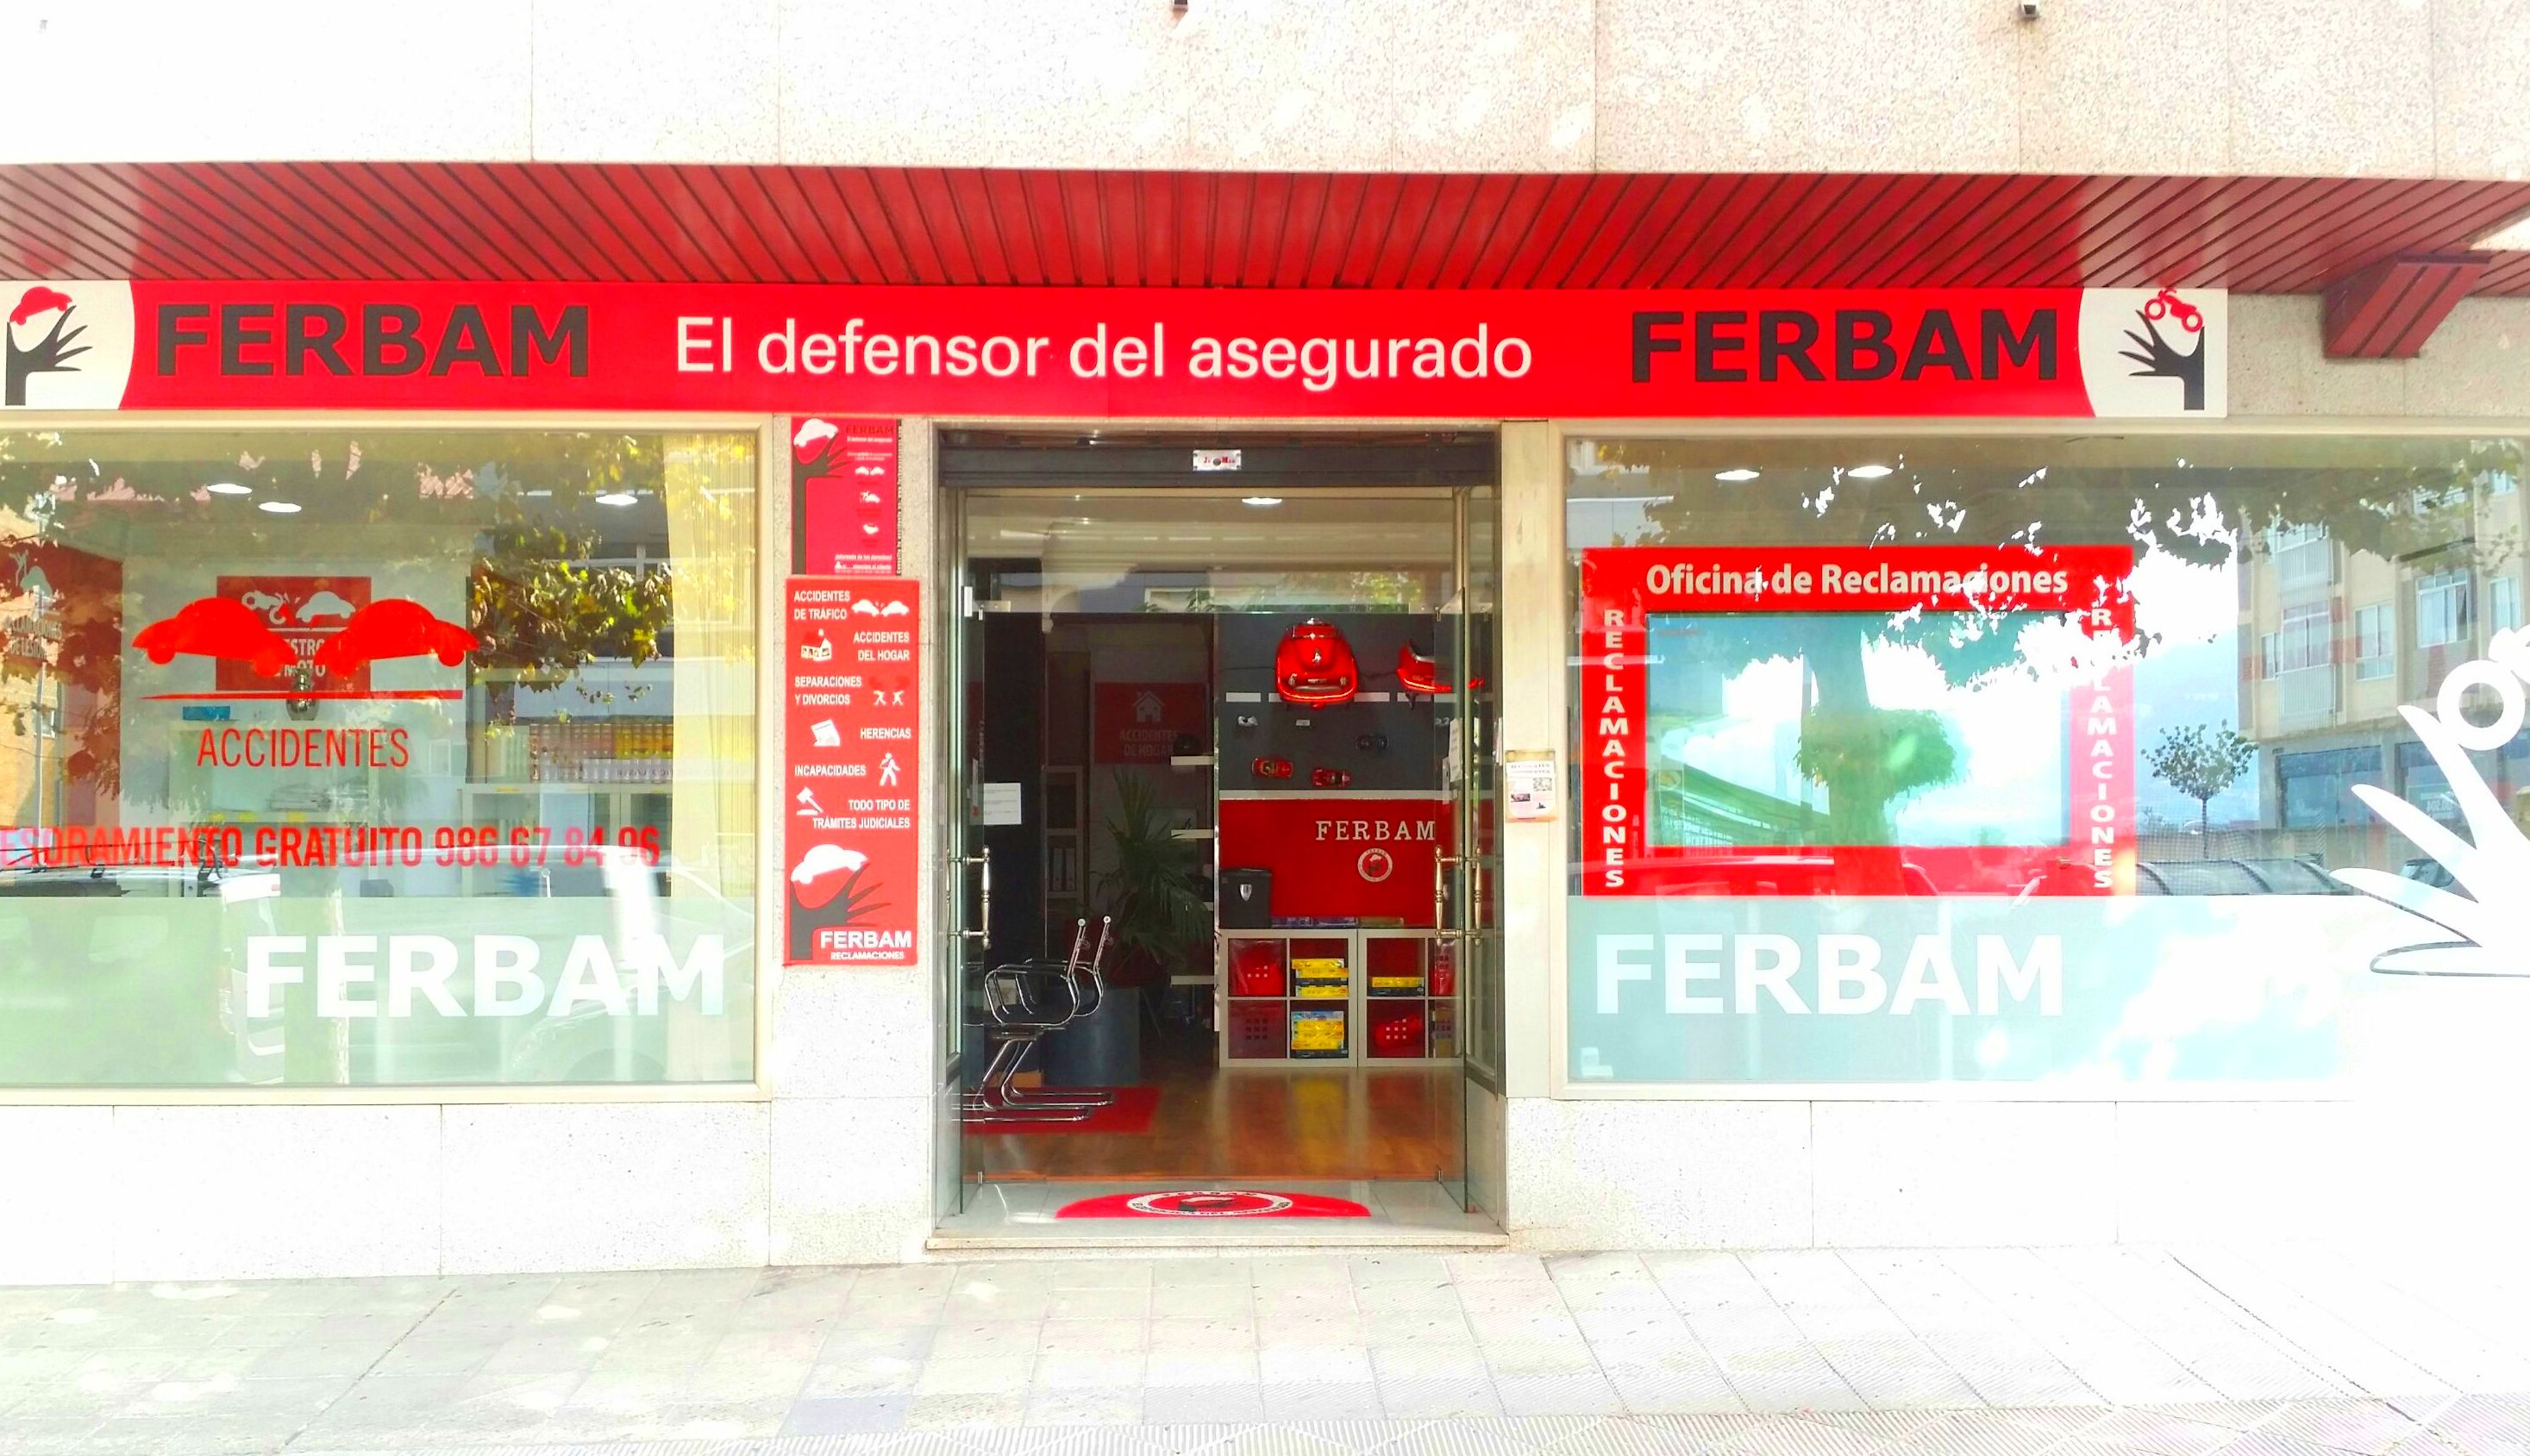 Foto 2 de Despacho de abogados especializado en indemnizaciones y reclamaciones en Vigo | Ferbam Reclamaciones